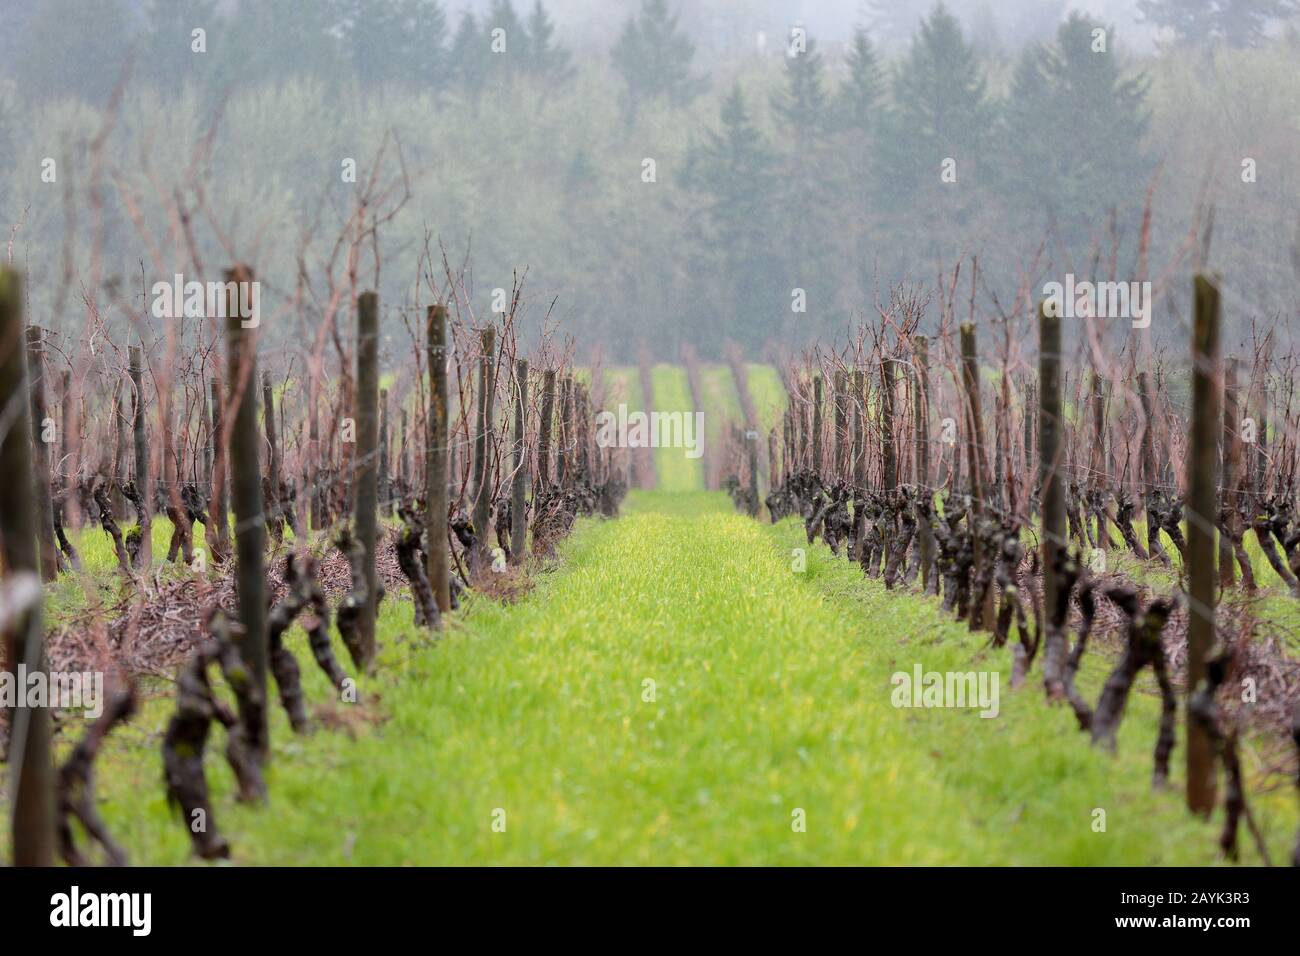 Visualizza le file di uve da vino in un vigneto in Oregon in una prima primavera giorno Foto Stock